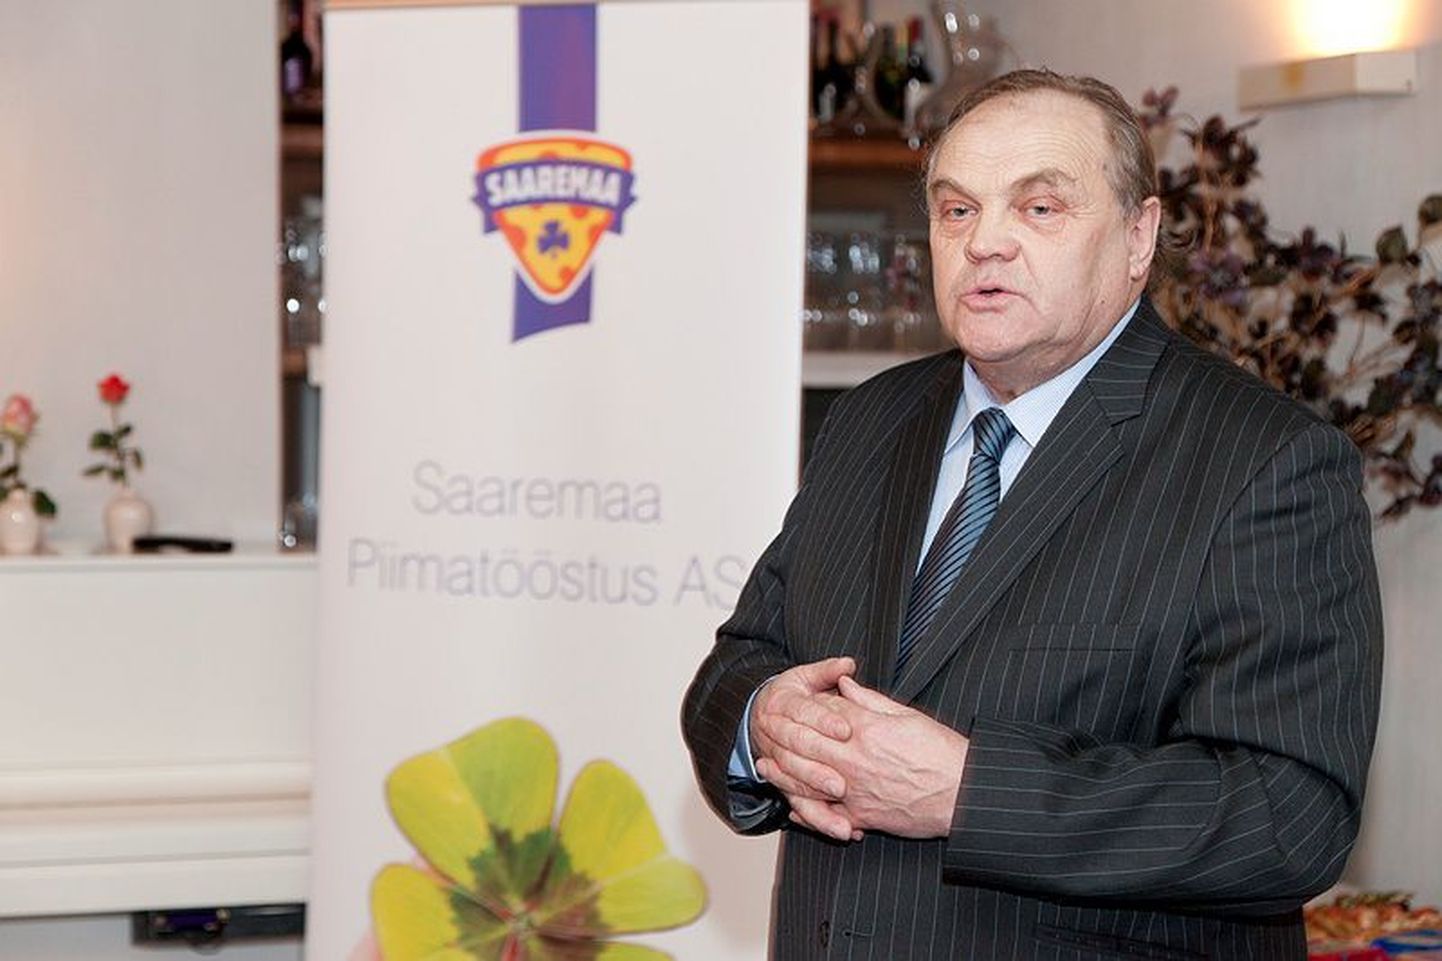 Kolm Saaremaa juustu sai õiguse kanda pääsukesemärki. Pildil Saaremaa Piimatööstuse juhatuse esimees Andi Saagpakk.